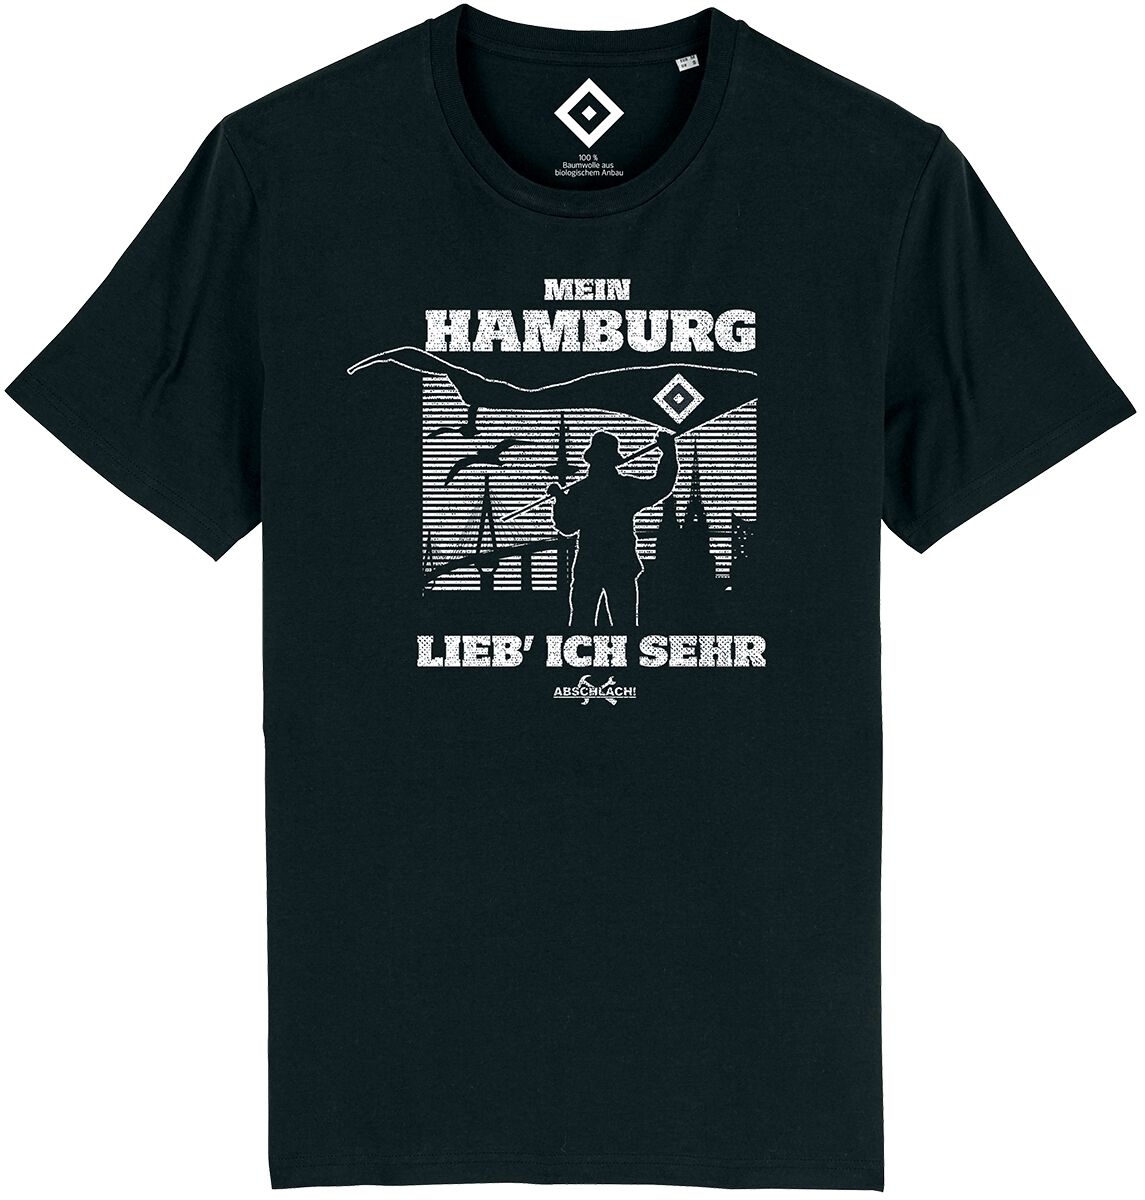 Hamburger SV T-Shirt - Mein Hamburg - Abschlach! - S bis 4XL - für Männer - Größe S - schwarz